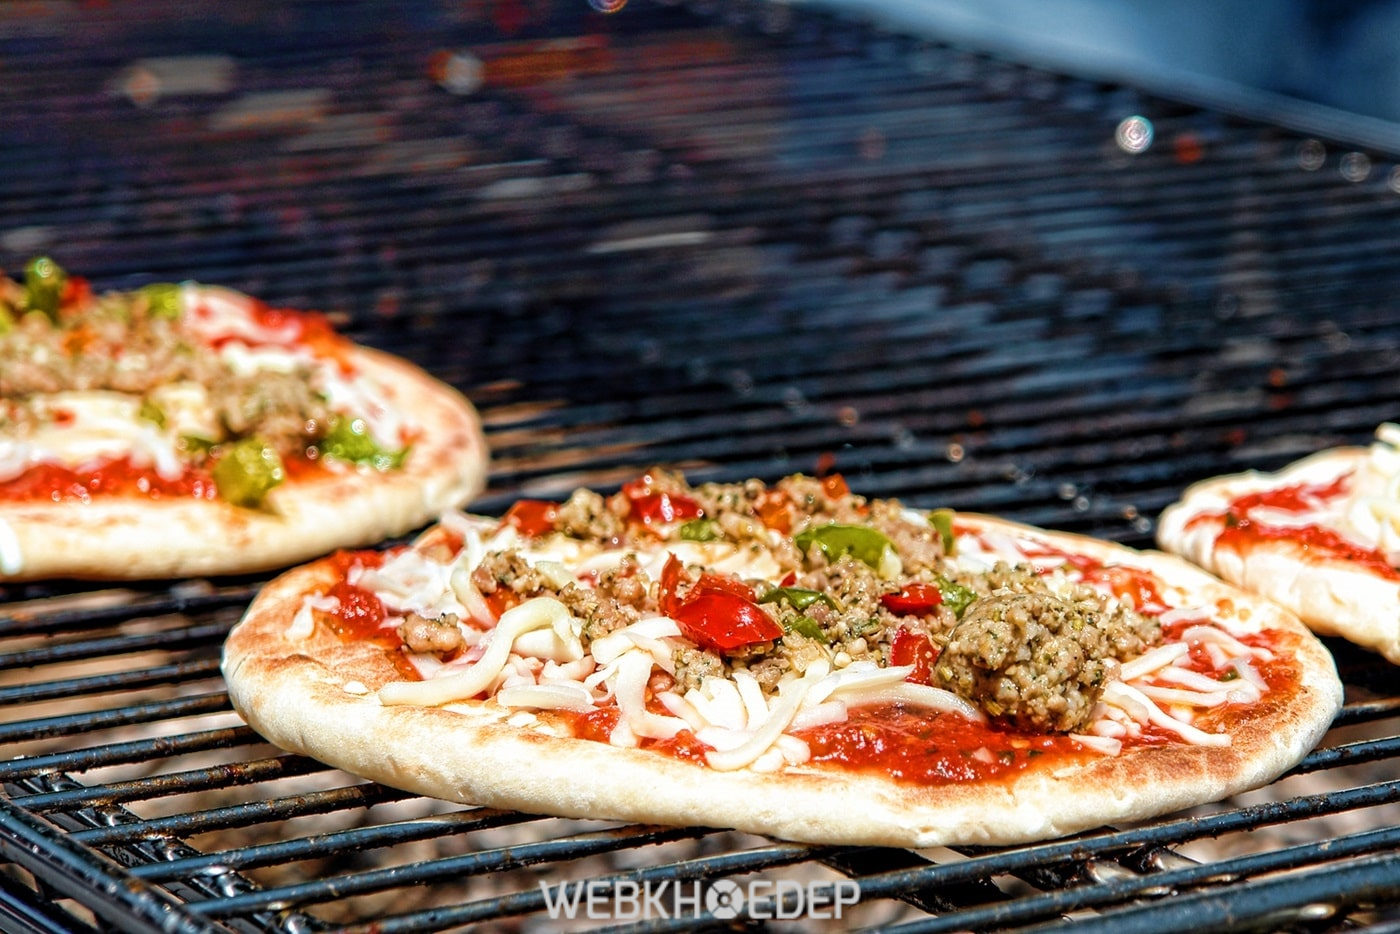 Biết cách làm bánh pizza bằng lò nướng bạn sẽ thoải mái thưởng thức hương vị giòn rụm, ngon tuyệt